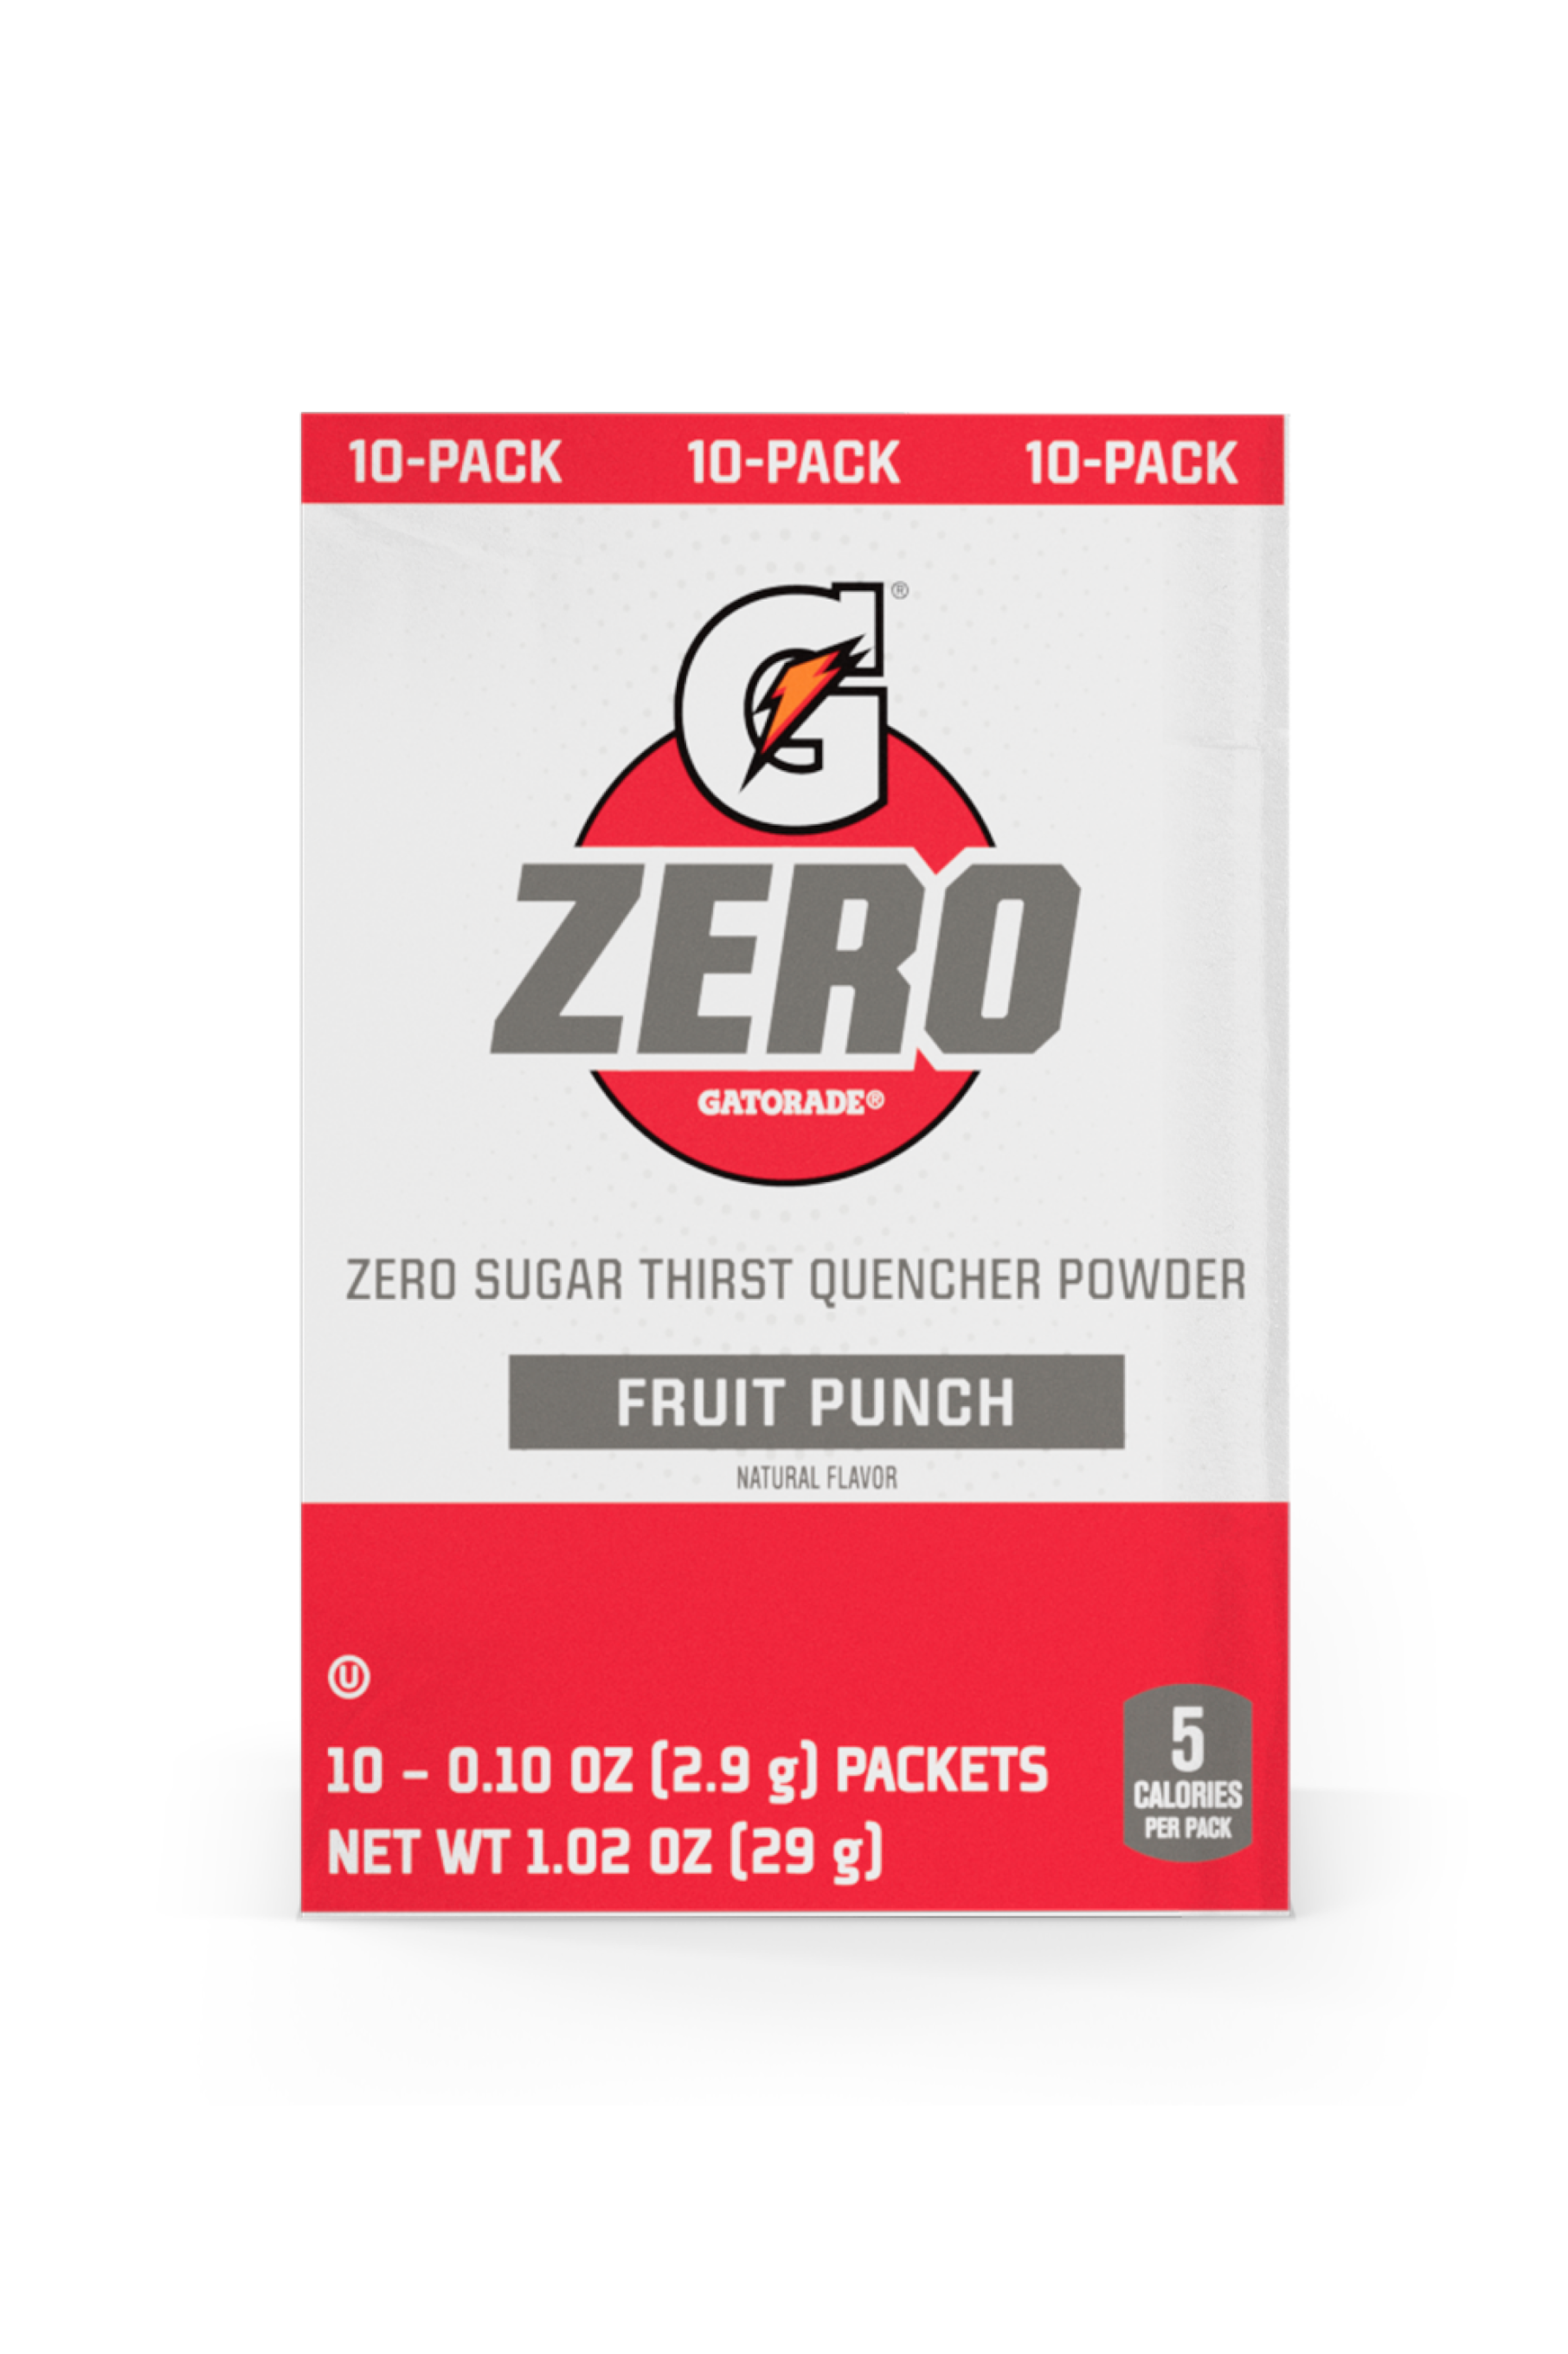 Gatorade Zero Sugar Thirst Quencher Single Serve Powder Fruit Punch 10 Pack